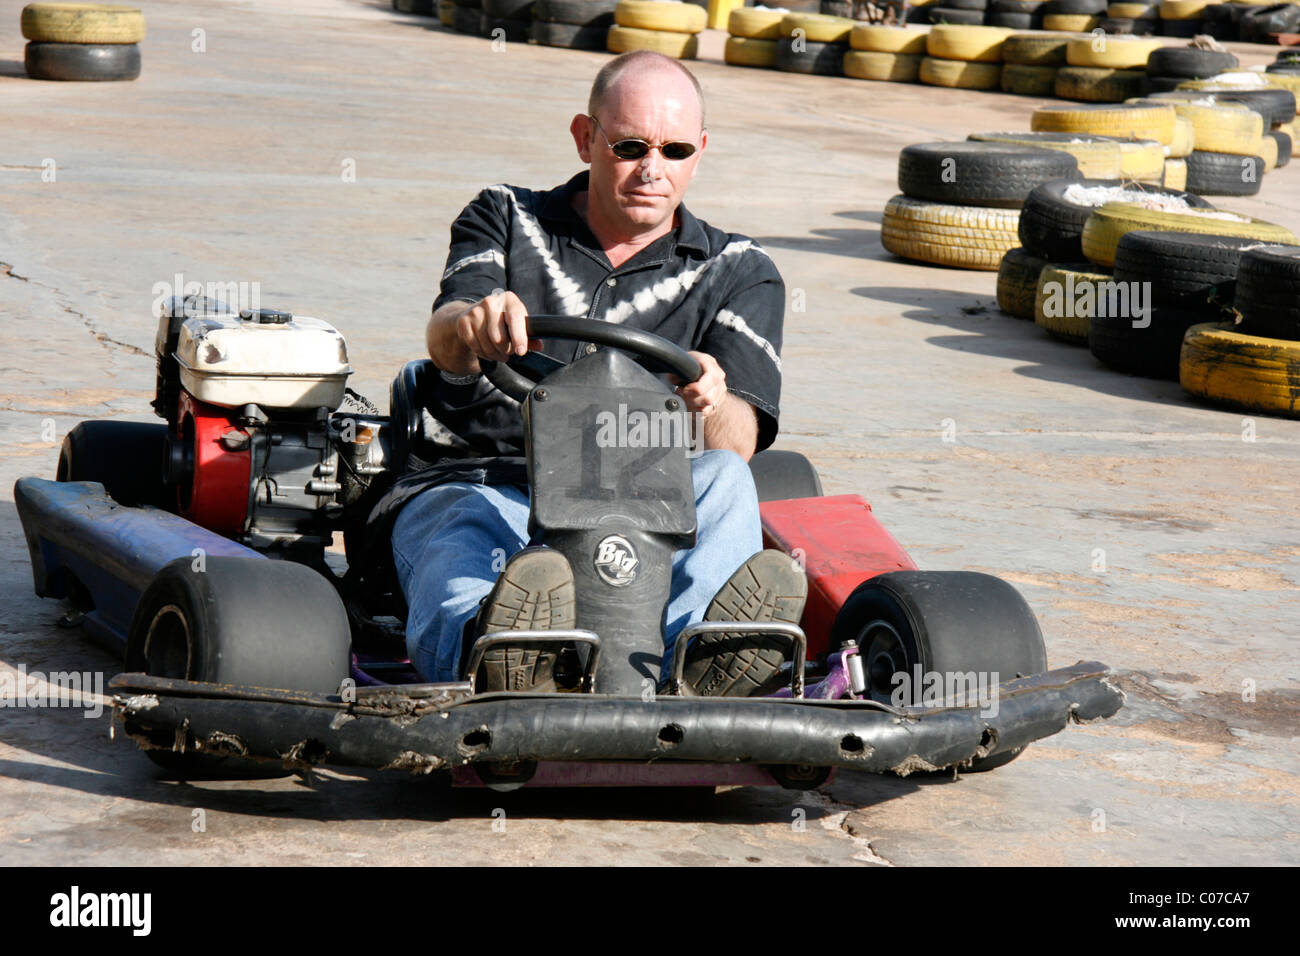 Un homme d'une course de kart sur une piste Banque D'Images